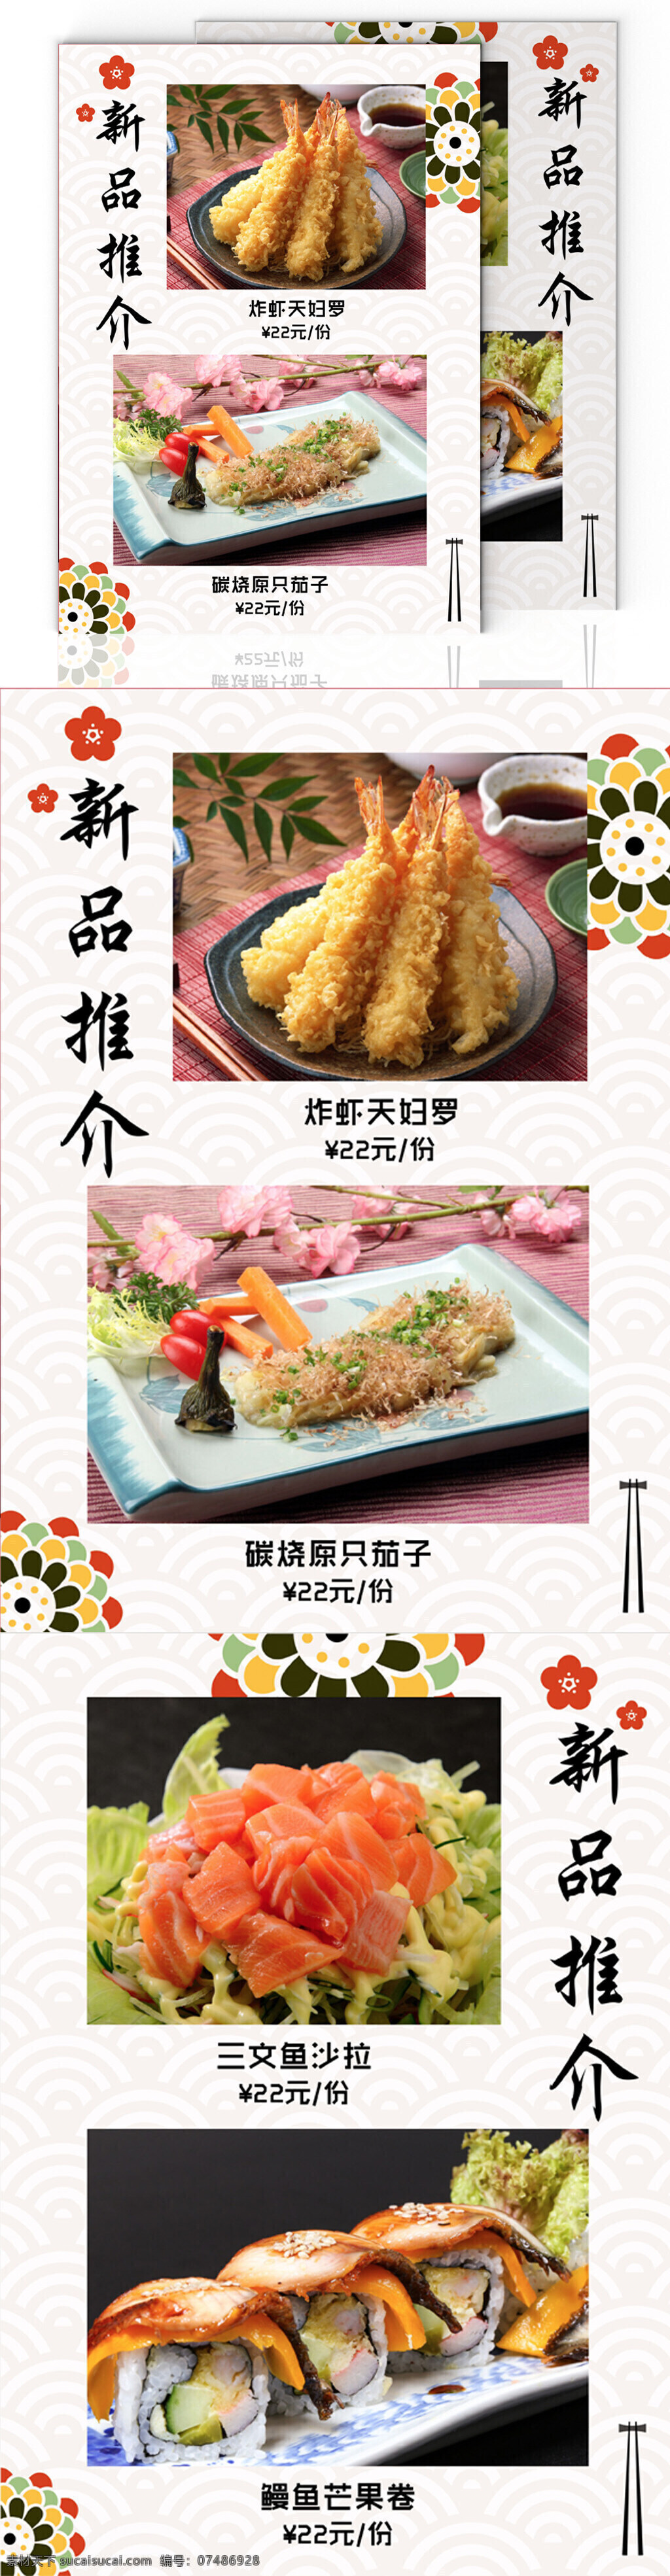 日式 餐厅 简约 菜谱 寿司 日式料理 日系元素